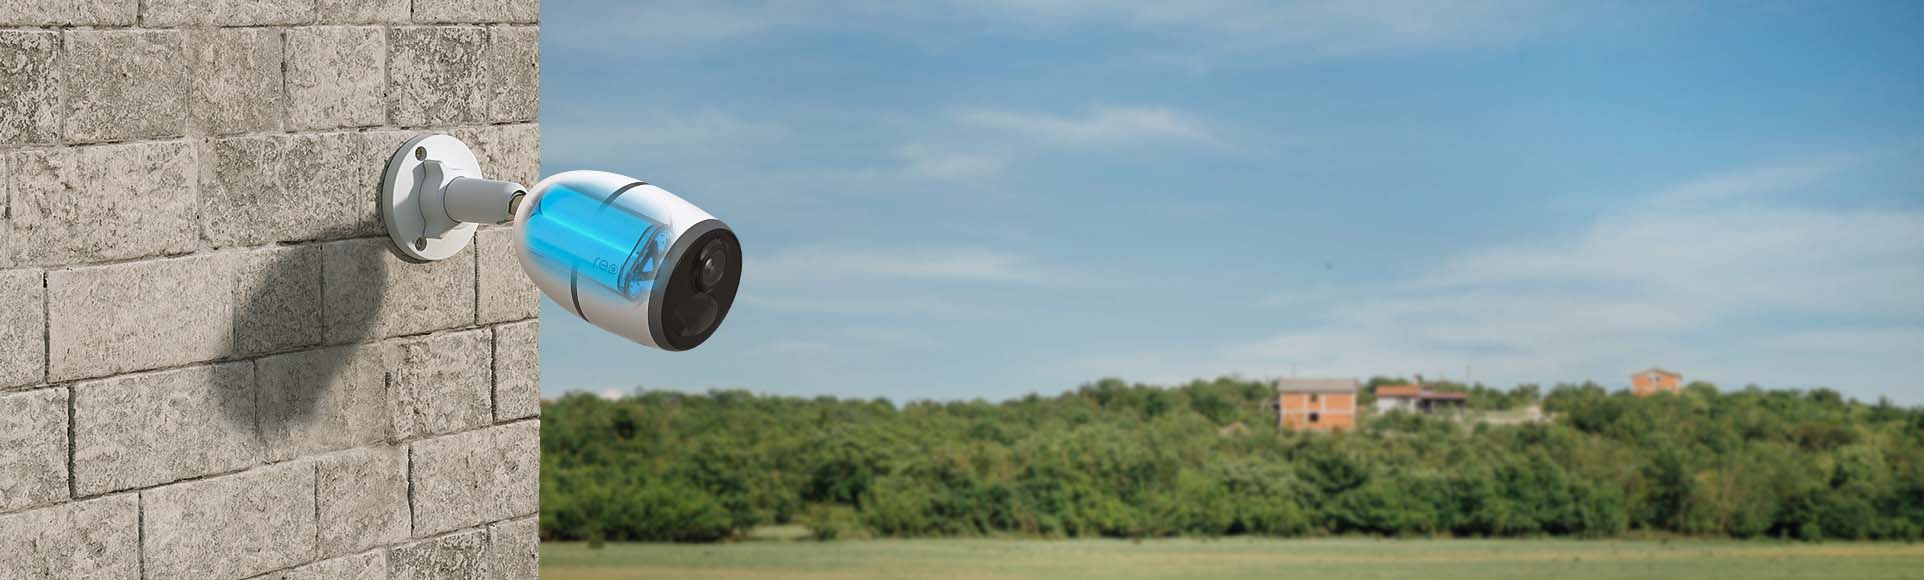 Sitio web oficial de Reolink: cámaras y sistemas de seguridad